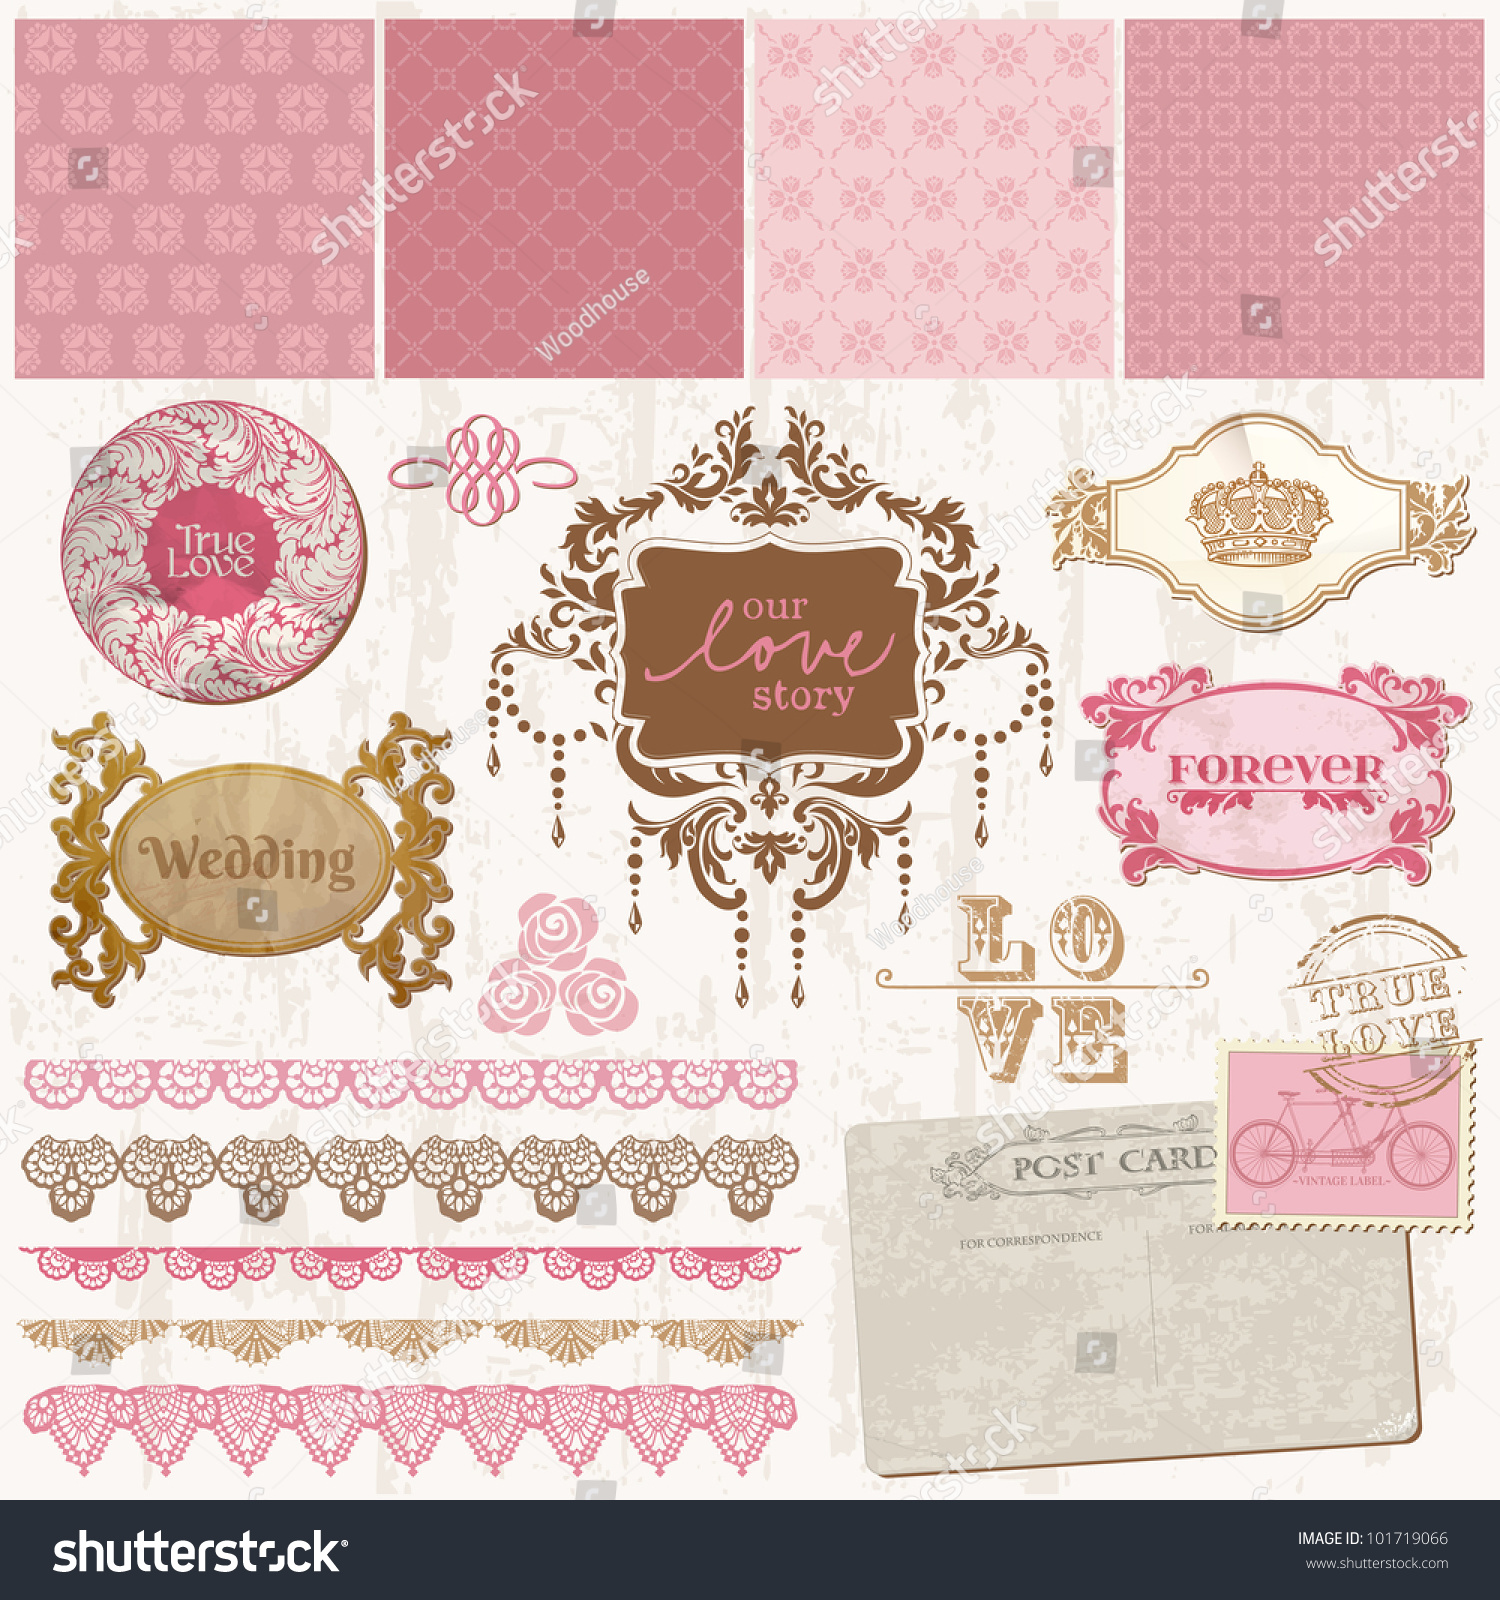 Scrapbook Design Elements - Vintage Wedding Set - In Vector - 101719066 ...